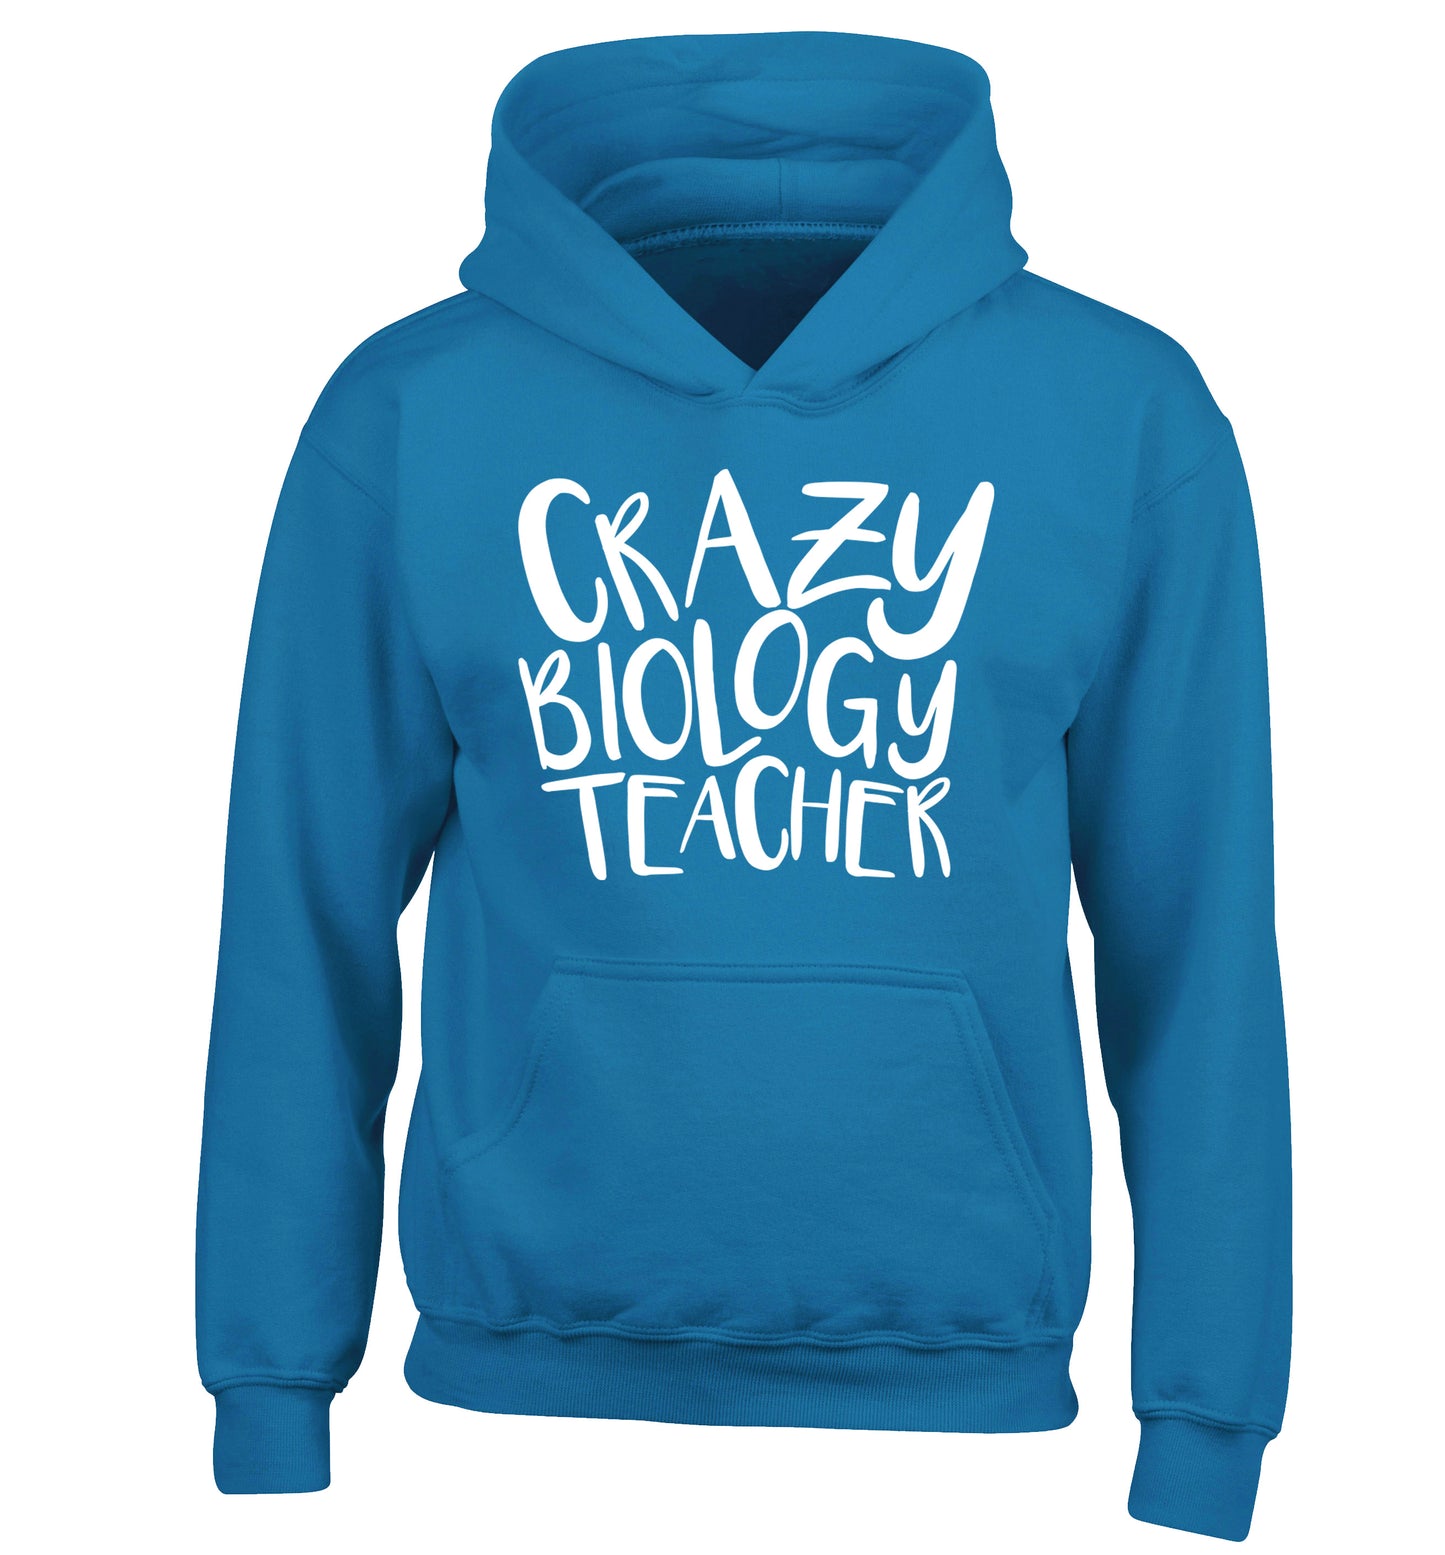 Crazy biology teacher children's blue hoodie 12-13 Years